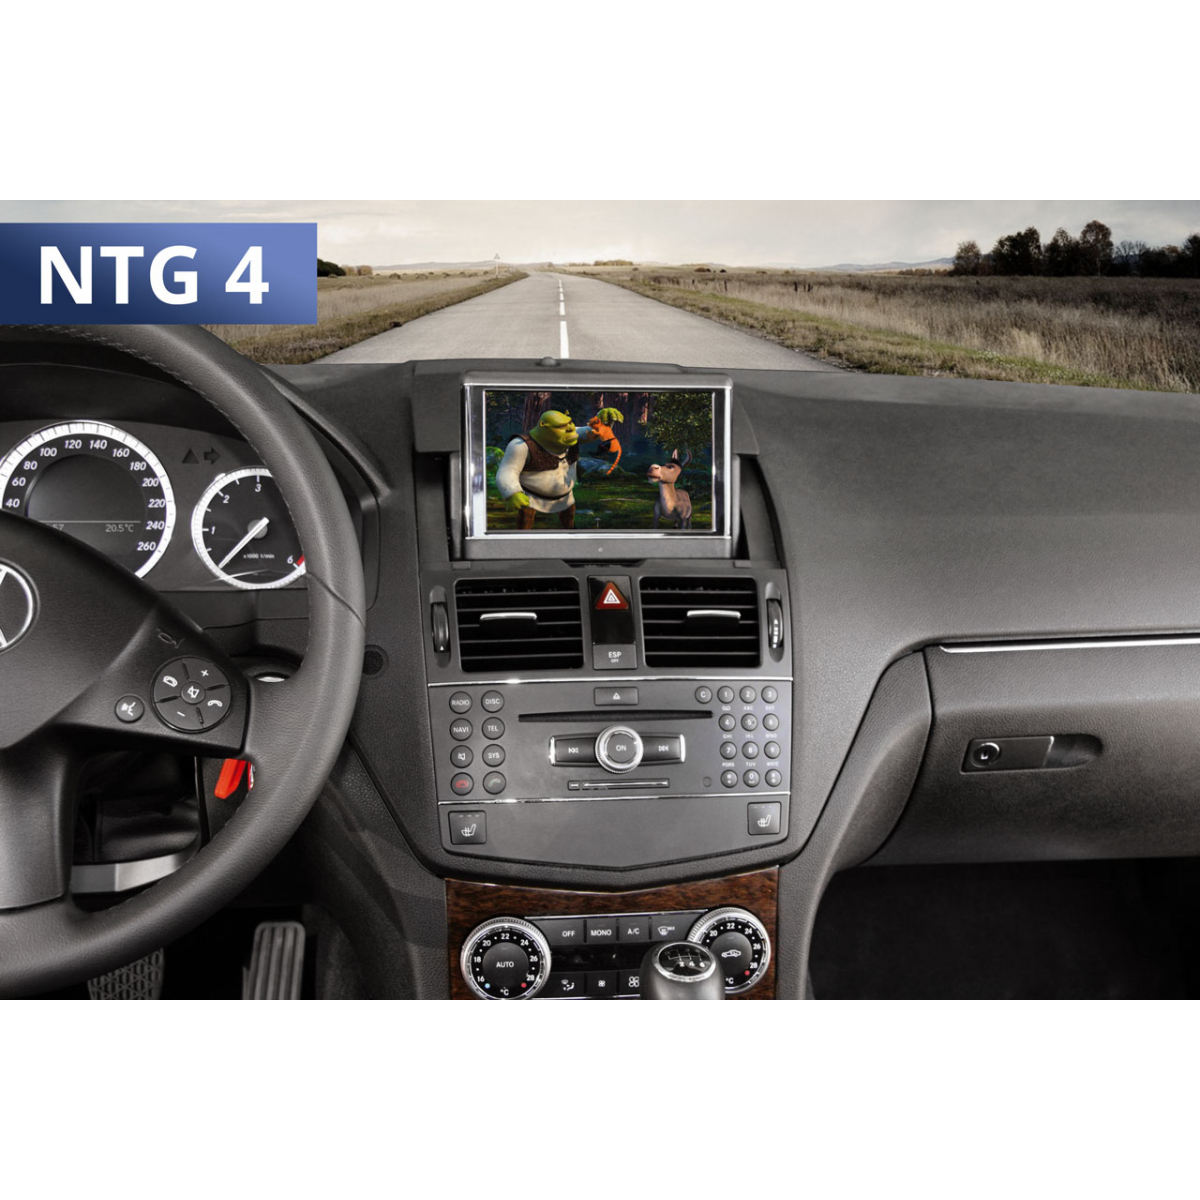 Ntg mercedes. NTG 4.0 w204. Audio 20 Mercedes w204. Mercedes w204 NTG 4.5. NTG 4.0 Mercedes c-class w204.